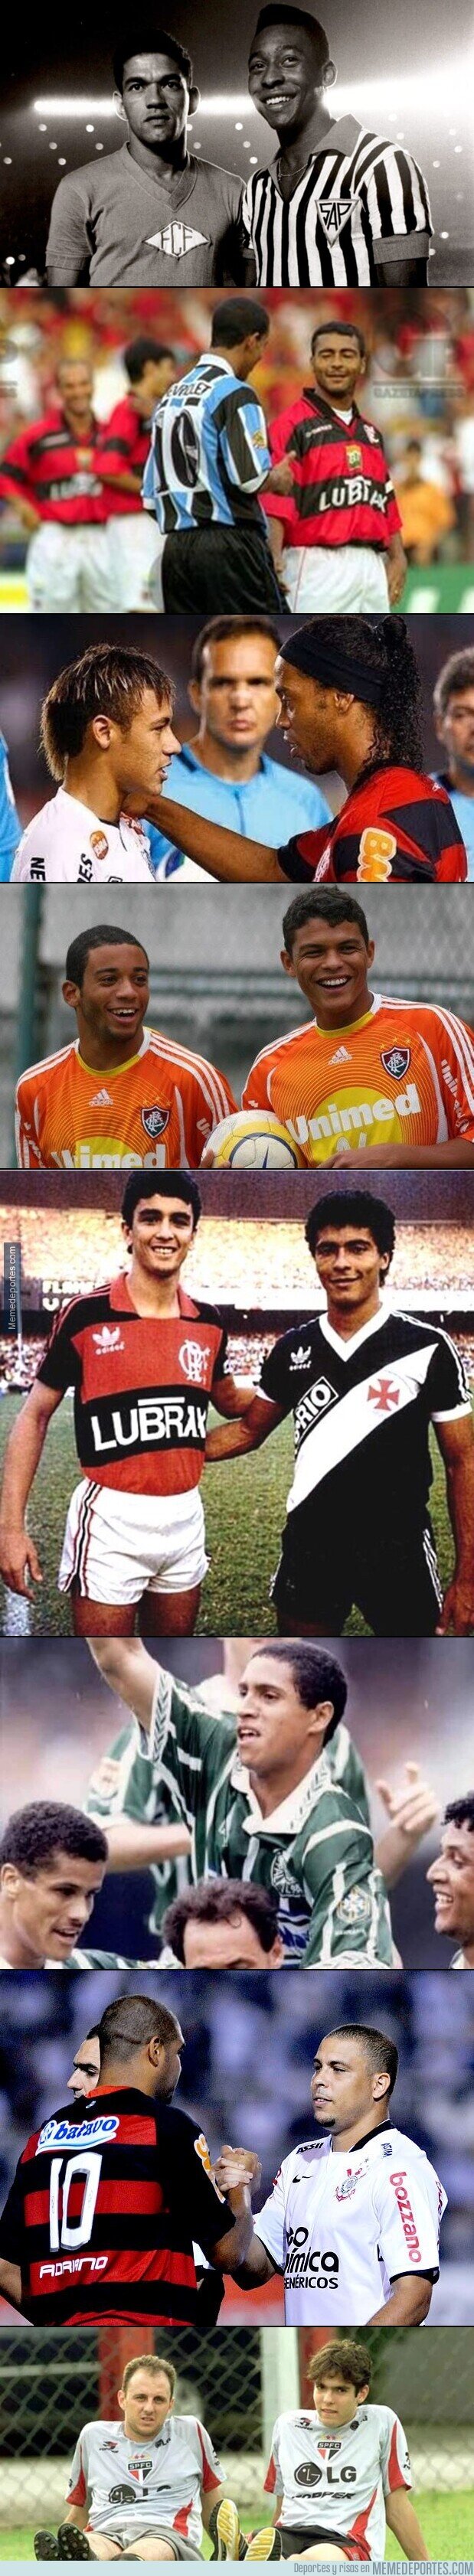 1127634 - Algunas coincidencias de brasileños cuando estaban en su liga.